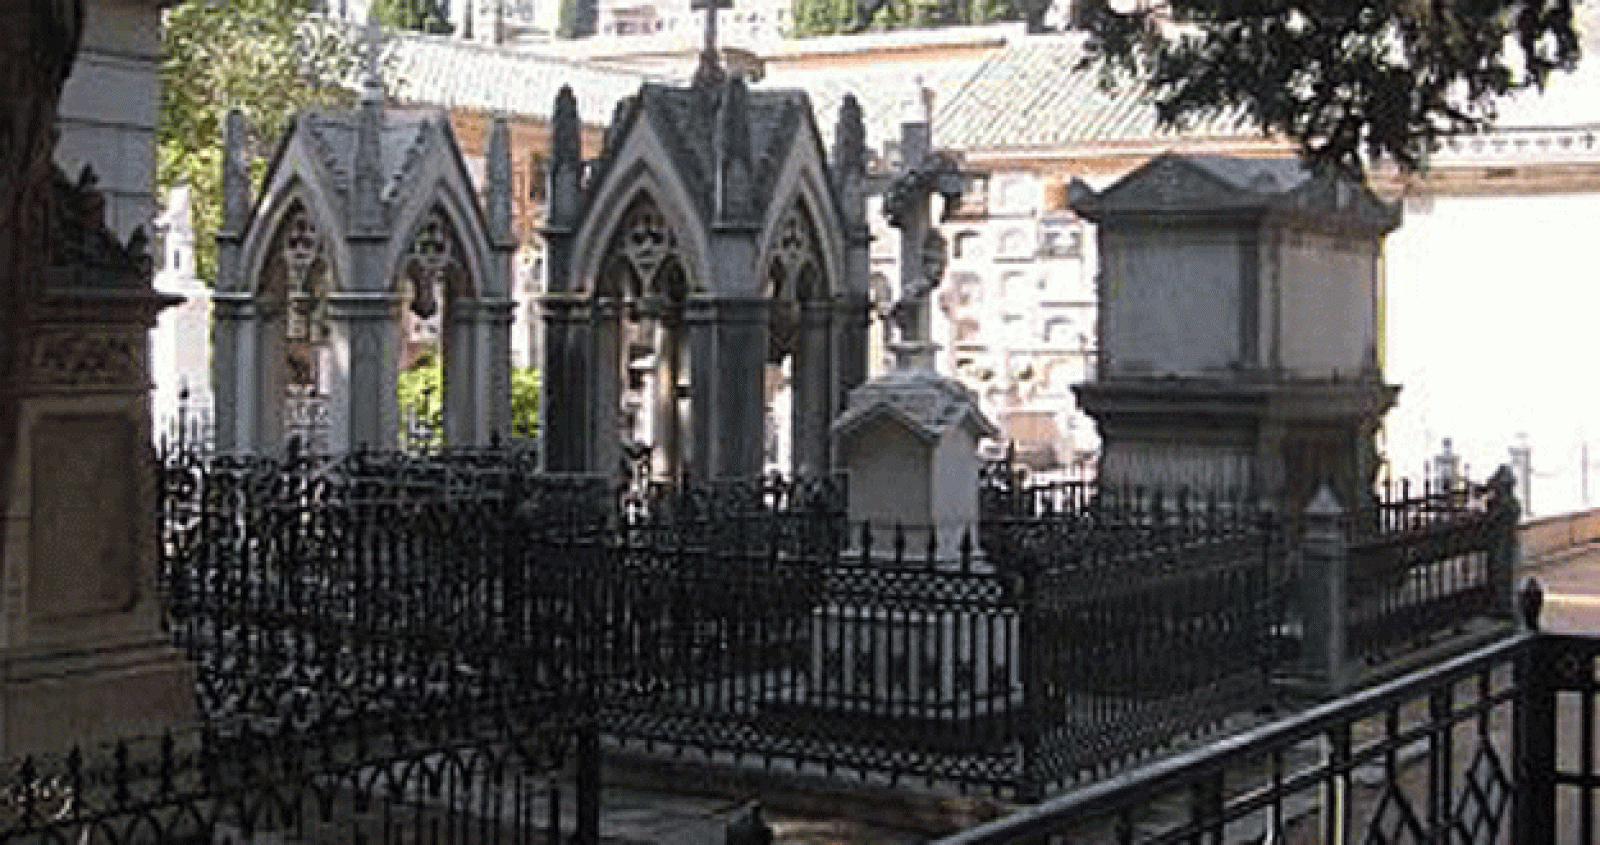 El cementerio de San José de Granada ha sido designado itinerario cultural europeo por el Consejo de Europa dentro de la ruta de cementerios históricos, que está integrada por 49 camposantos en 37 ciudades, como París, Berlín o Roma.